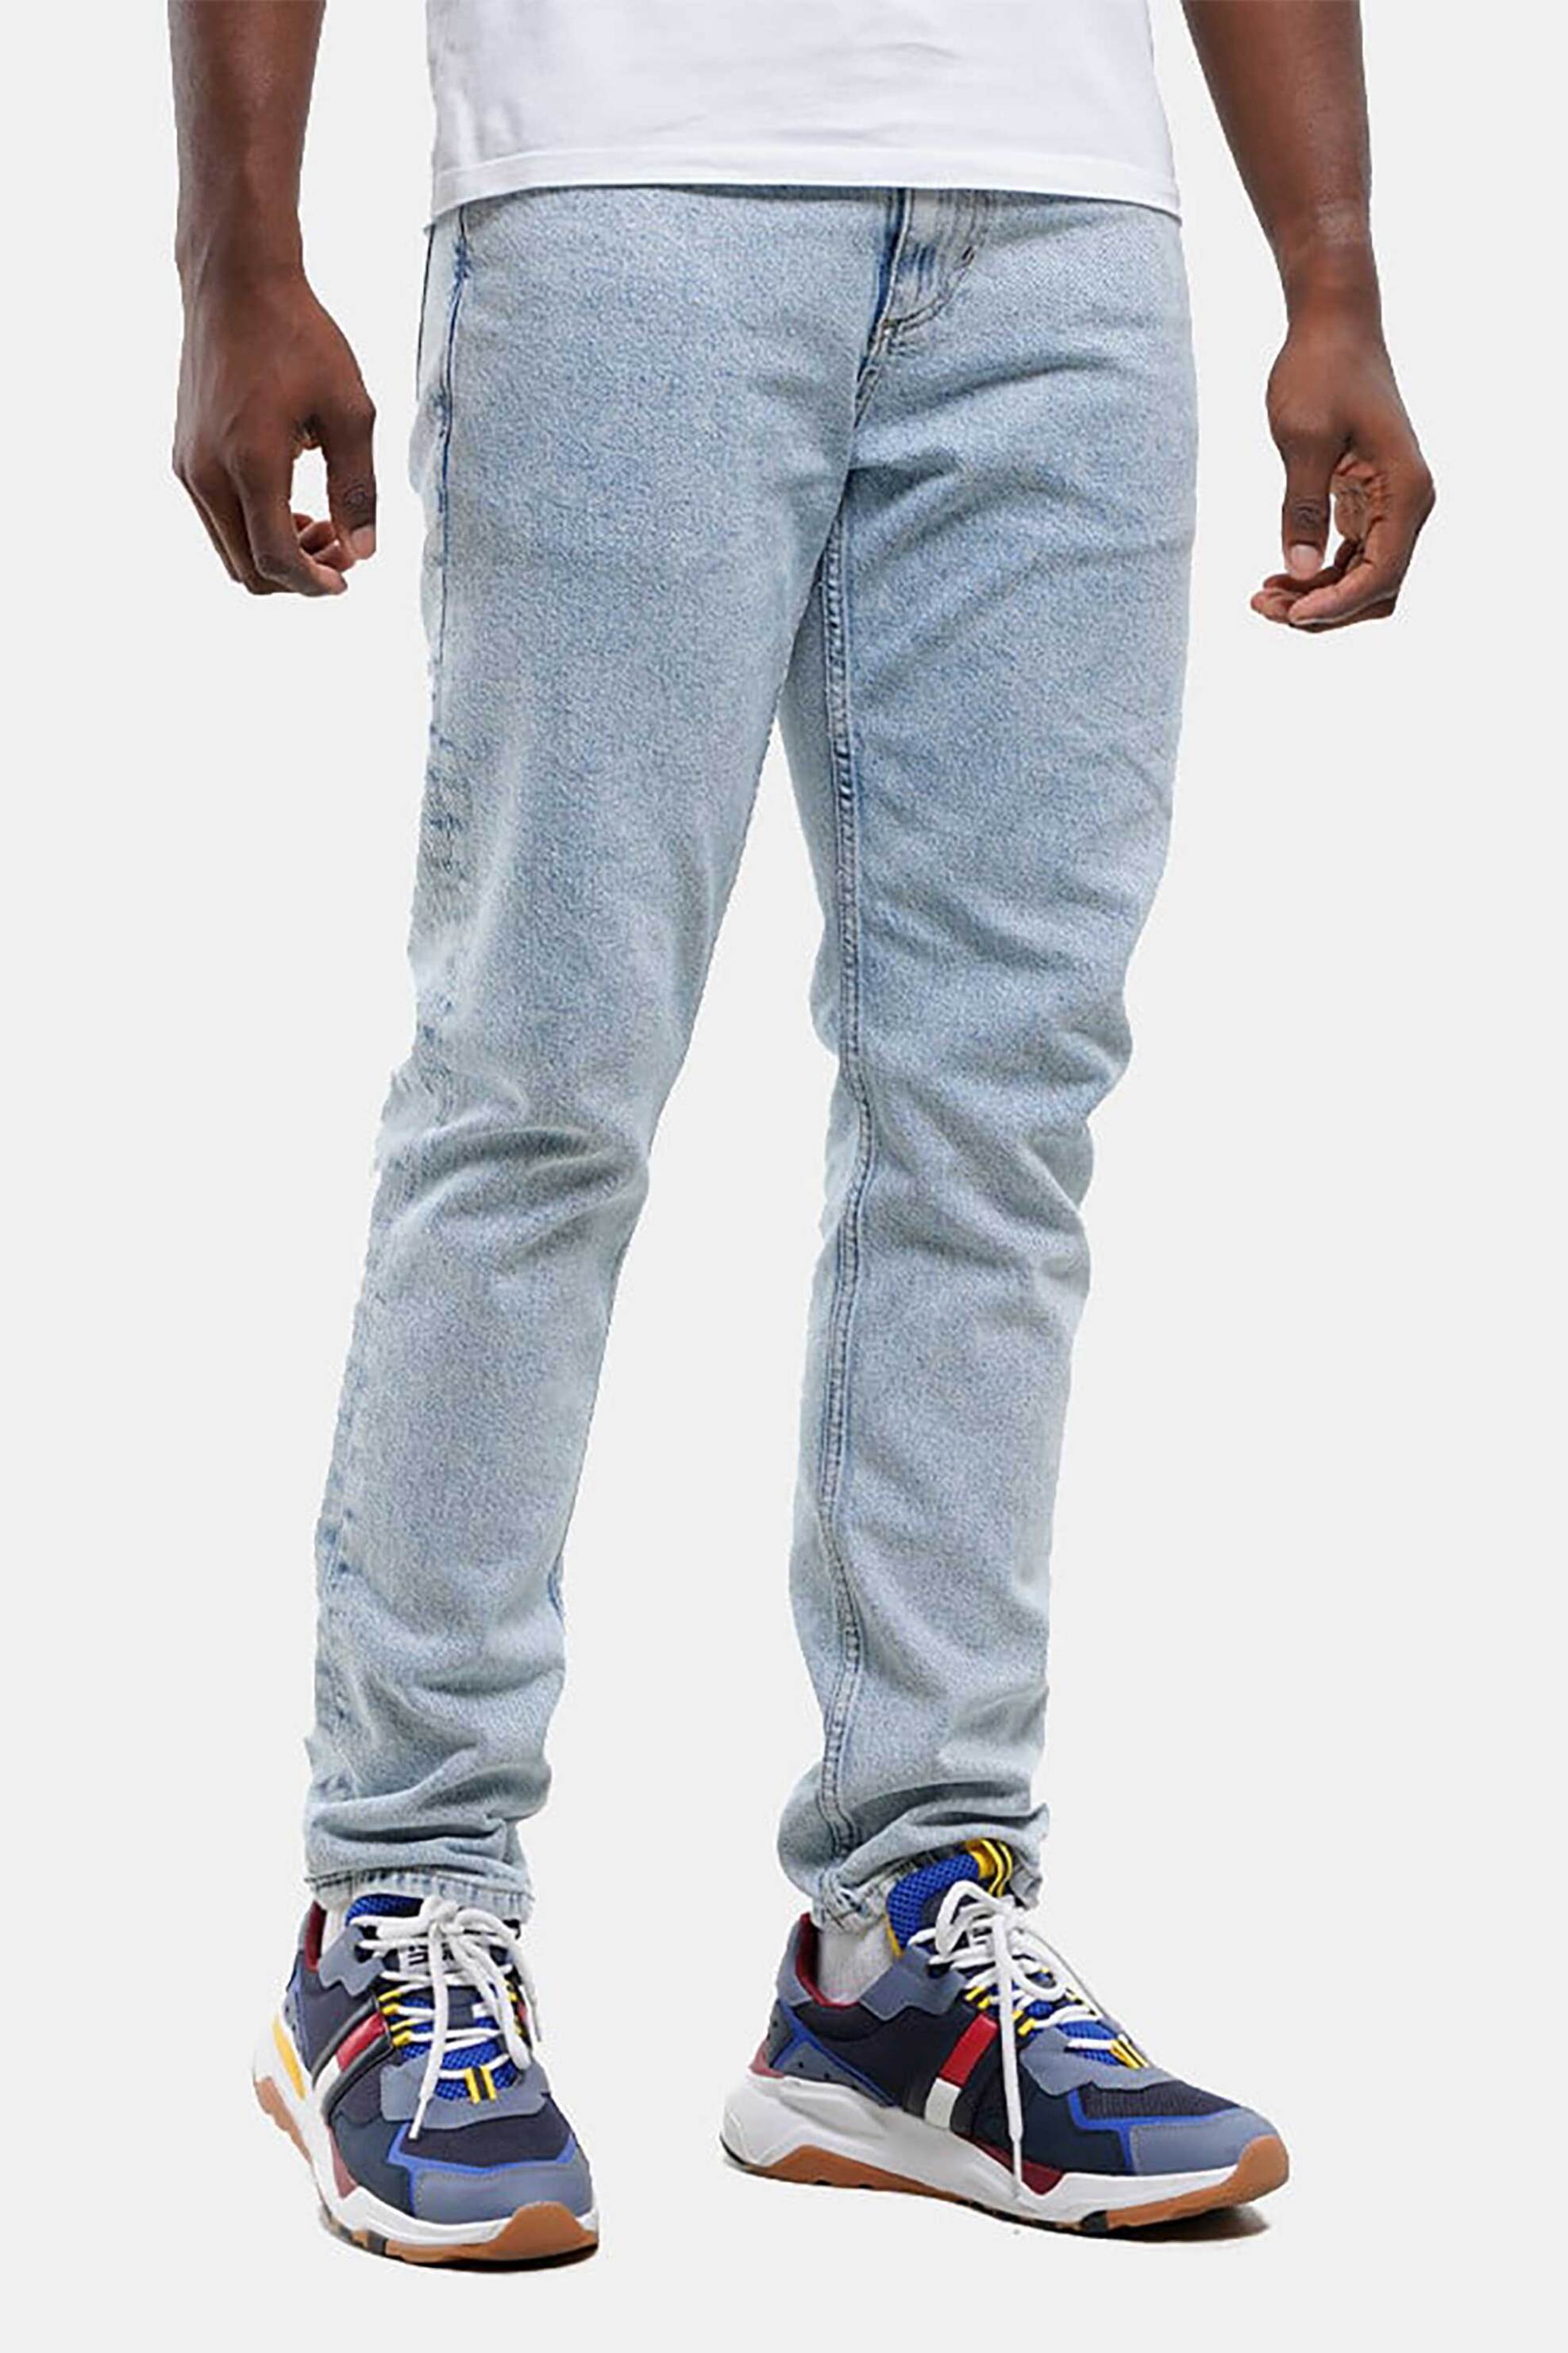 Ανδρική Μόδα > Ανδρικά Ρούχα > Ανδρικά Τζιν > Ανδρικά Τζιν Straight Tommy Jeans ανδρικό τζην παντελόνι πεντάτσεπο Regular Fit "Scanton Y" - DM0DM18151 Denim Blue Ανοιχτό